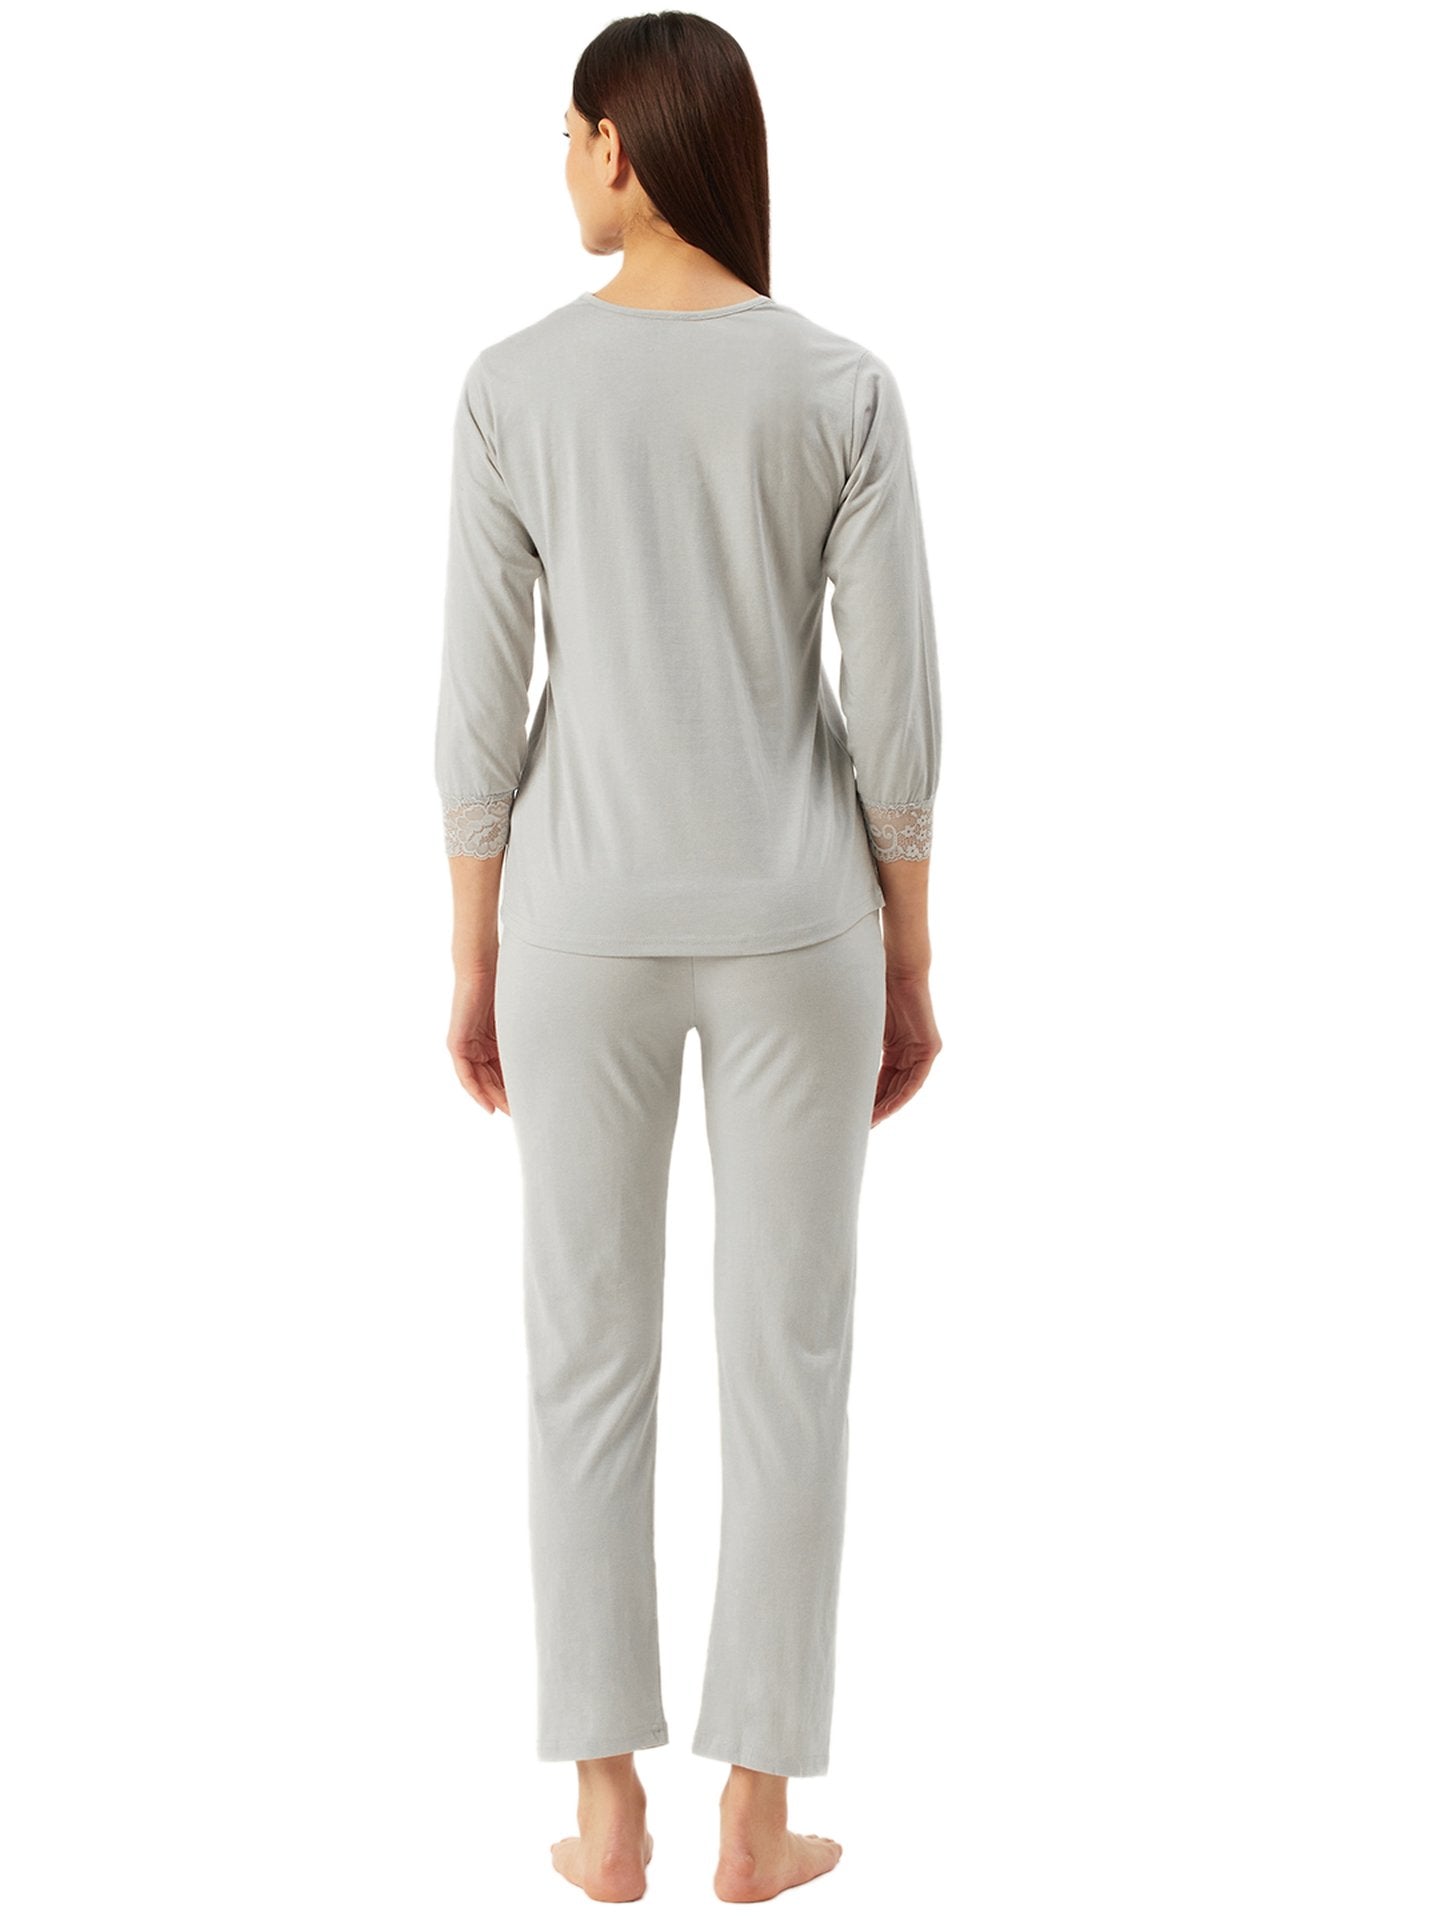 Klamotten Women's Top & Pyjama Nightsuit N104Z